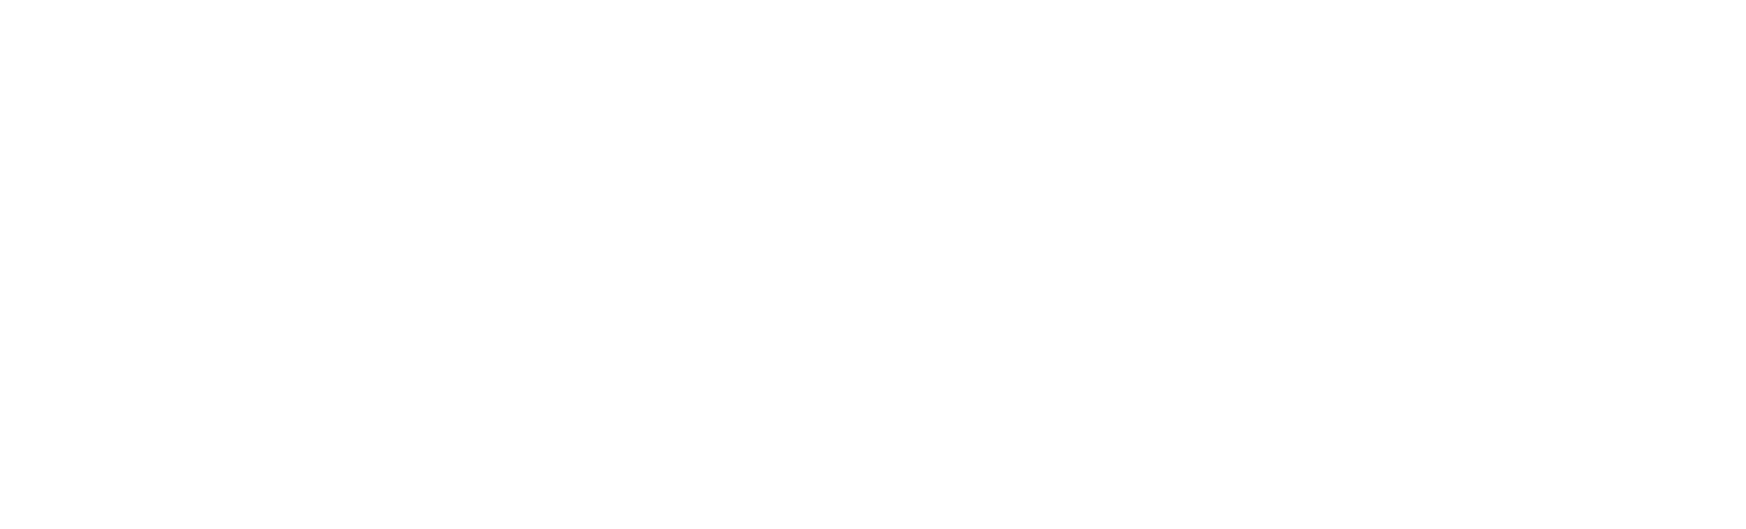 mulesoft-white.png